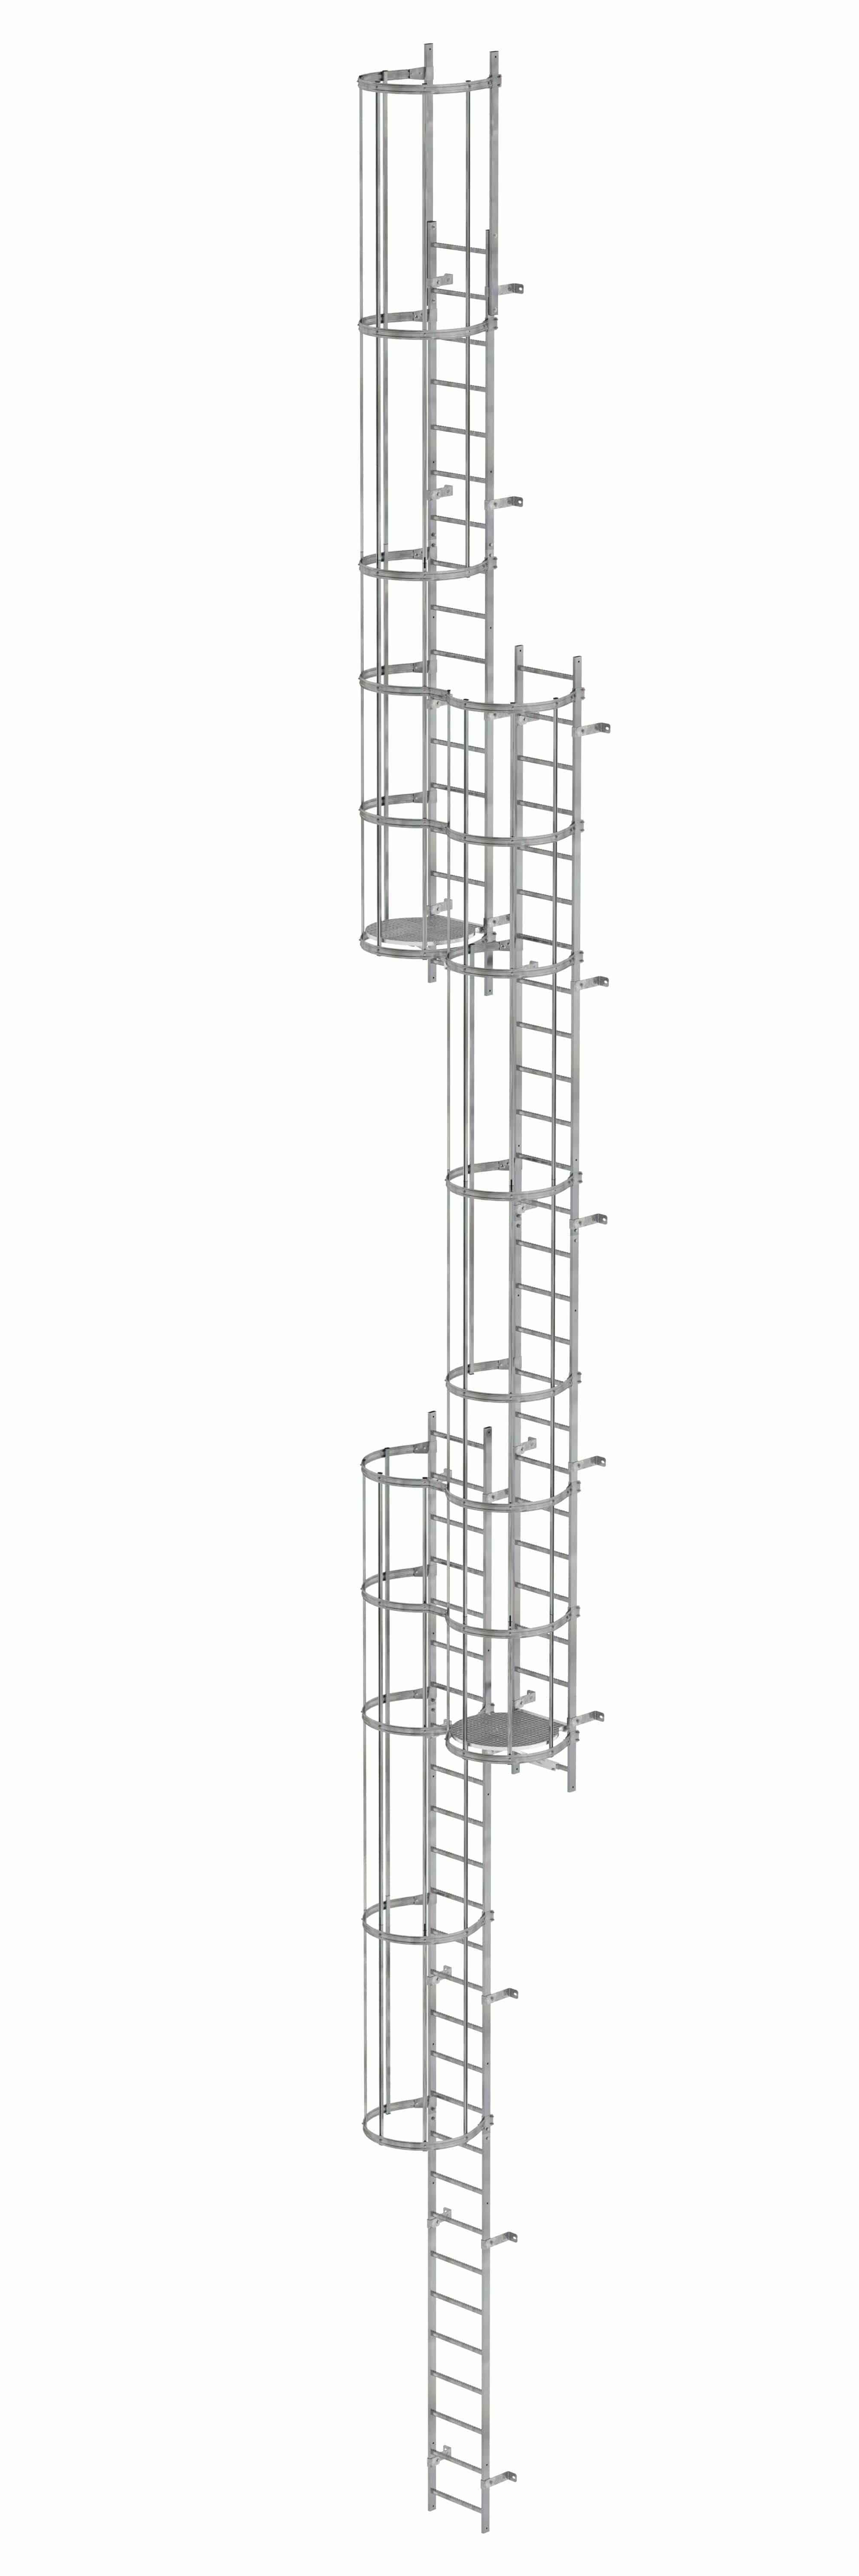 Munk Mehrzügige Steigleiter mit Rückenschutz (Notleiter) Stahl verzinkt 16,32m